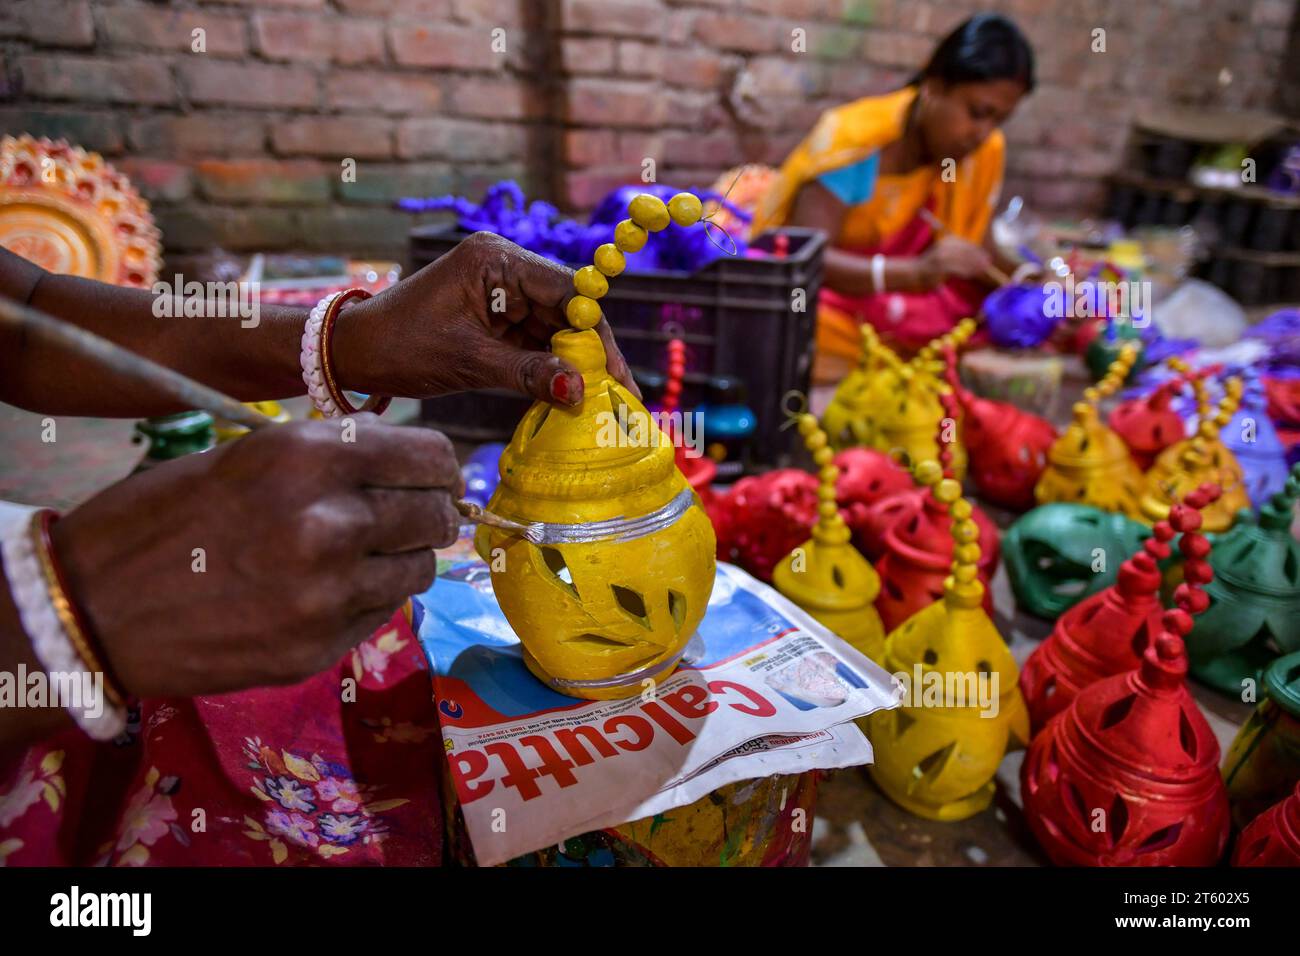 Ein Arbeiter färbt eine Erdlampe in dem Töpferdorf Chaltaberia, rund 40 km vor Kalkutta in Westbengalen. Das ganze Dorf ist im vollen Rhythmus der irdenen Lampen- und Idol-Produktion vor dem Diwali-Festival in Indien. Erdlampen werden in allen indischen Städten verkauft, wie Kalkutta, Delhi, Mumbai, Hyderabad, Gujarat, Assam, Patna und Rajasthan, besonders während der Festivalsaison. Sogar Erdlampen werden vor den Diwali-Feiern nach außerhalb Indiens exportiert. Stockfoto